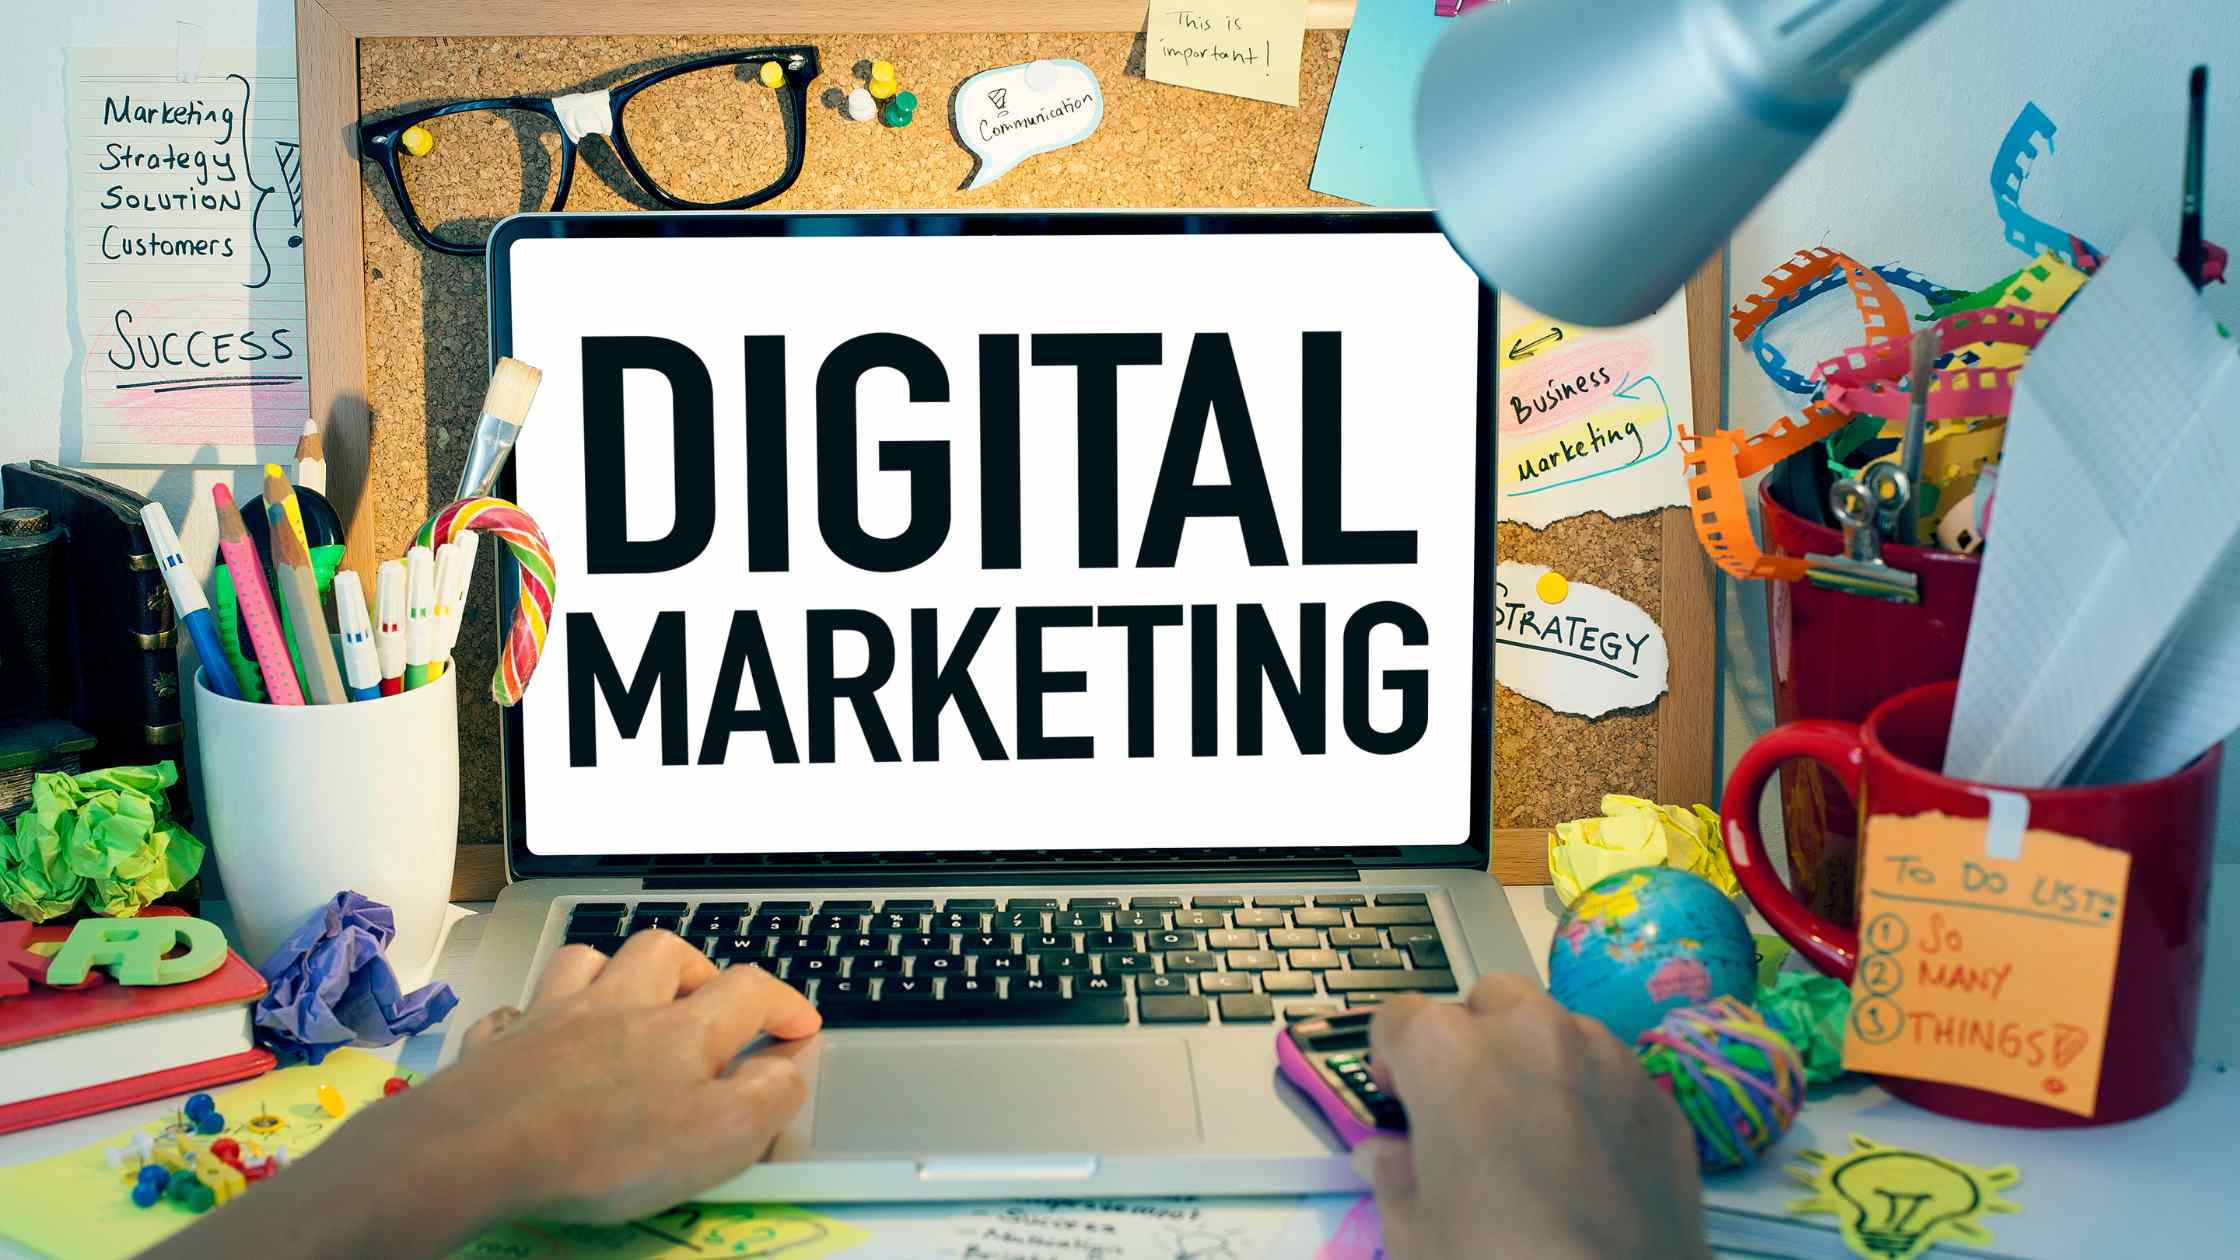 Digital Marketing tác động đến quy trình quyết định mua hàng của khách hàng như thế nào?